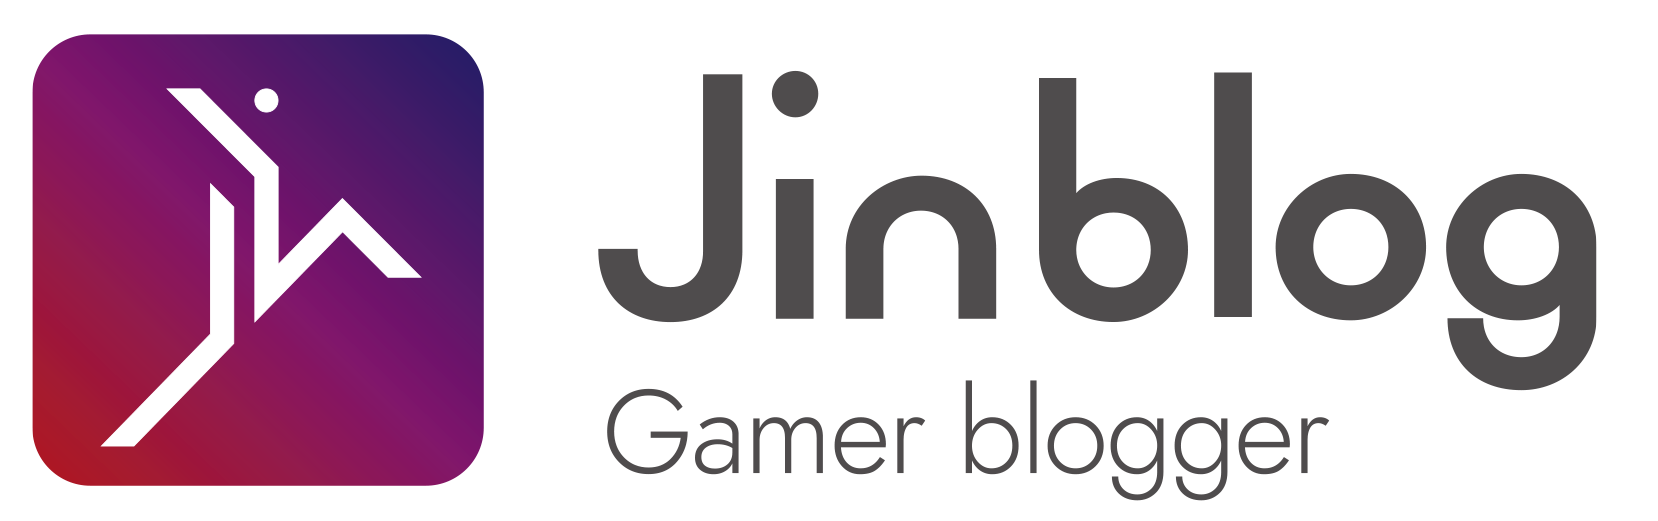 Jinblog